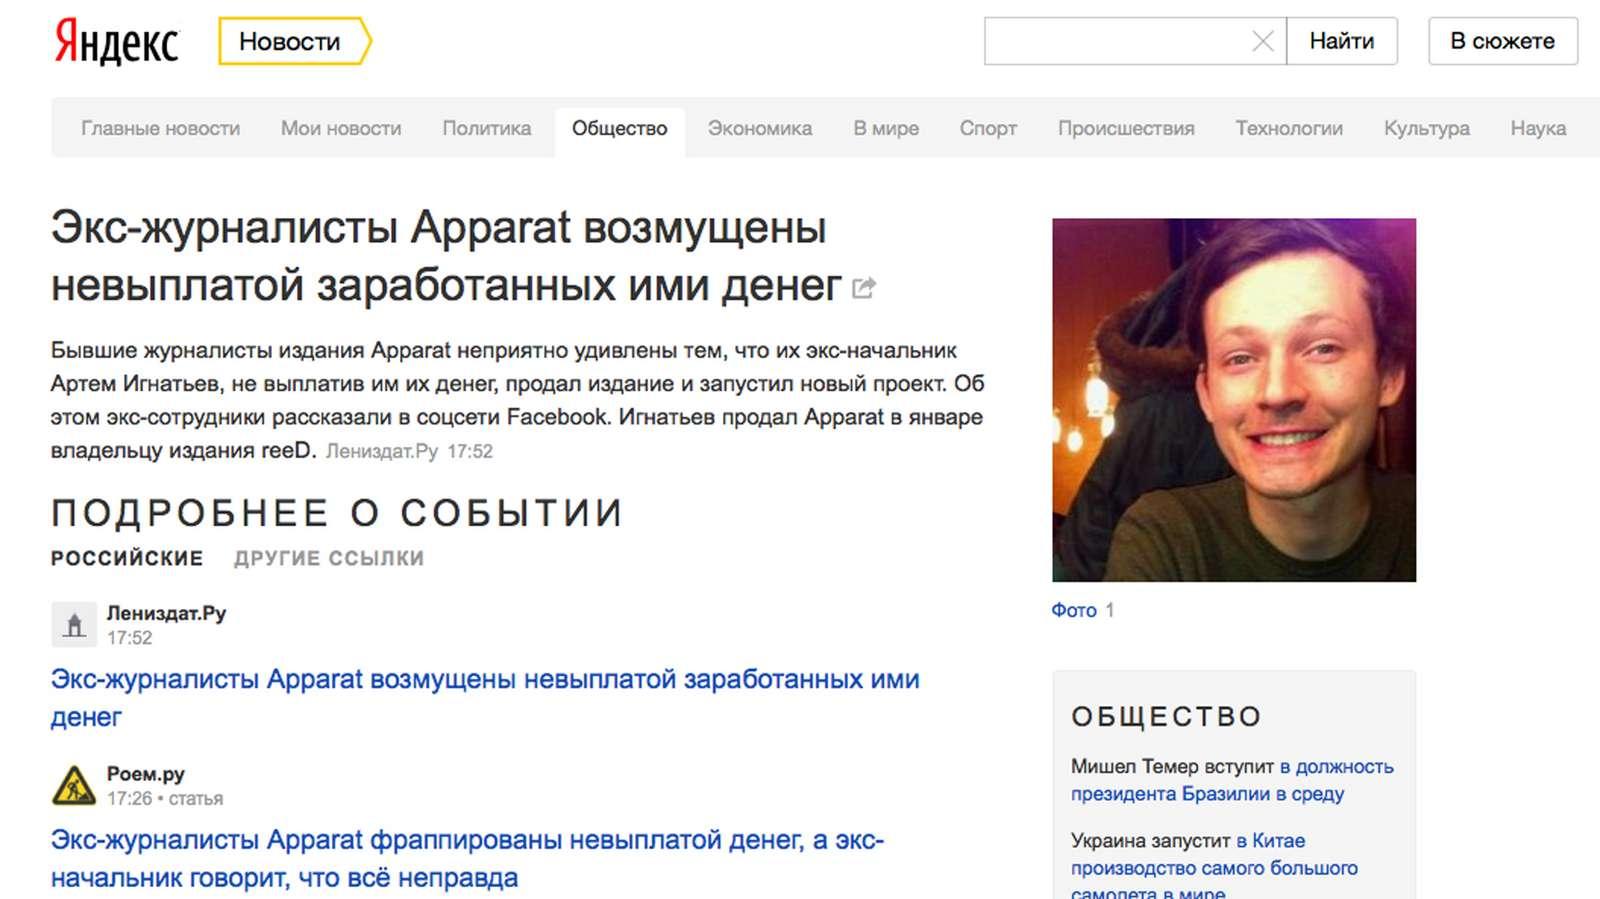 Программа главная новость. Новости в Яндексе новости в Яндексе.